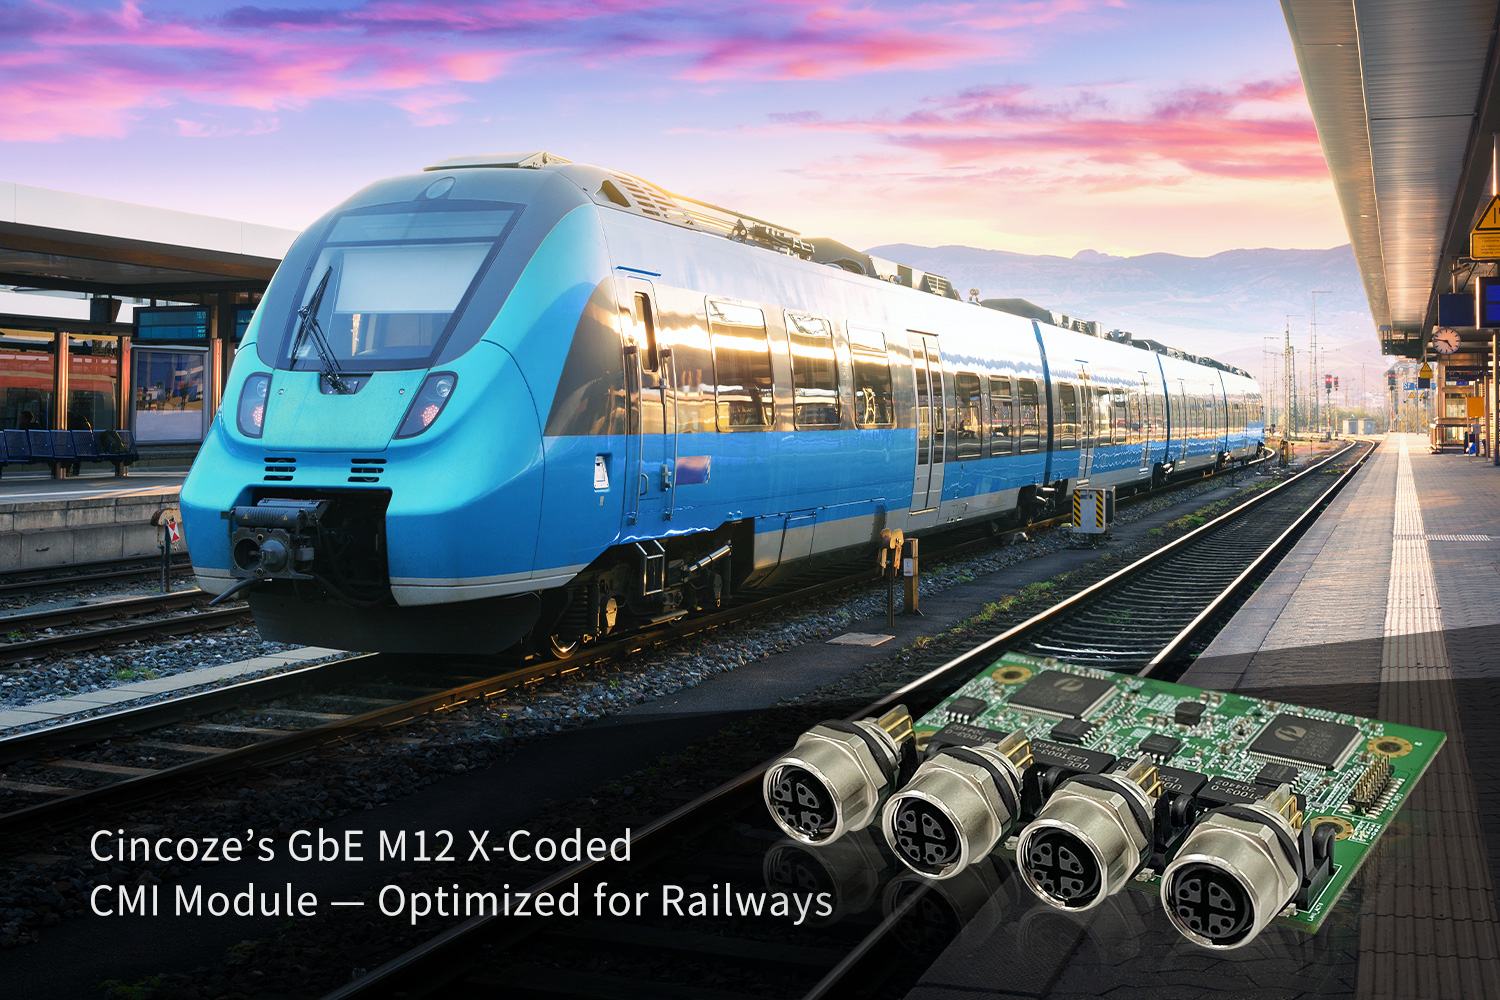 德承新開發M12 X-型 CMI模塊 優化軌道交通的傳輸效能